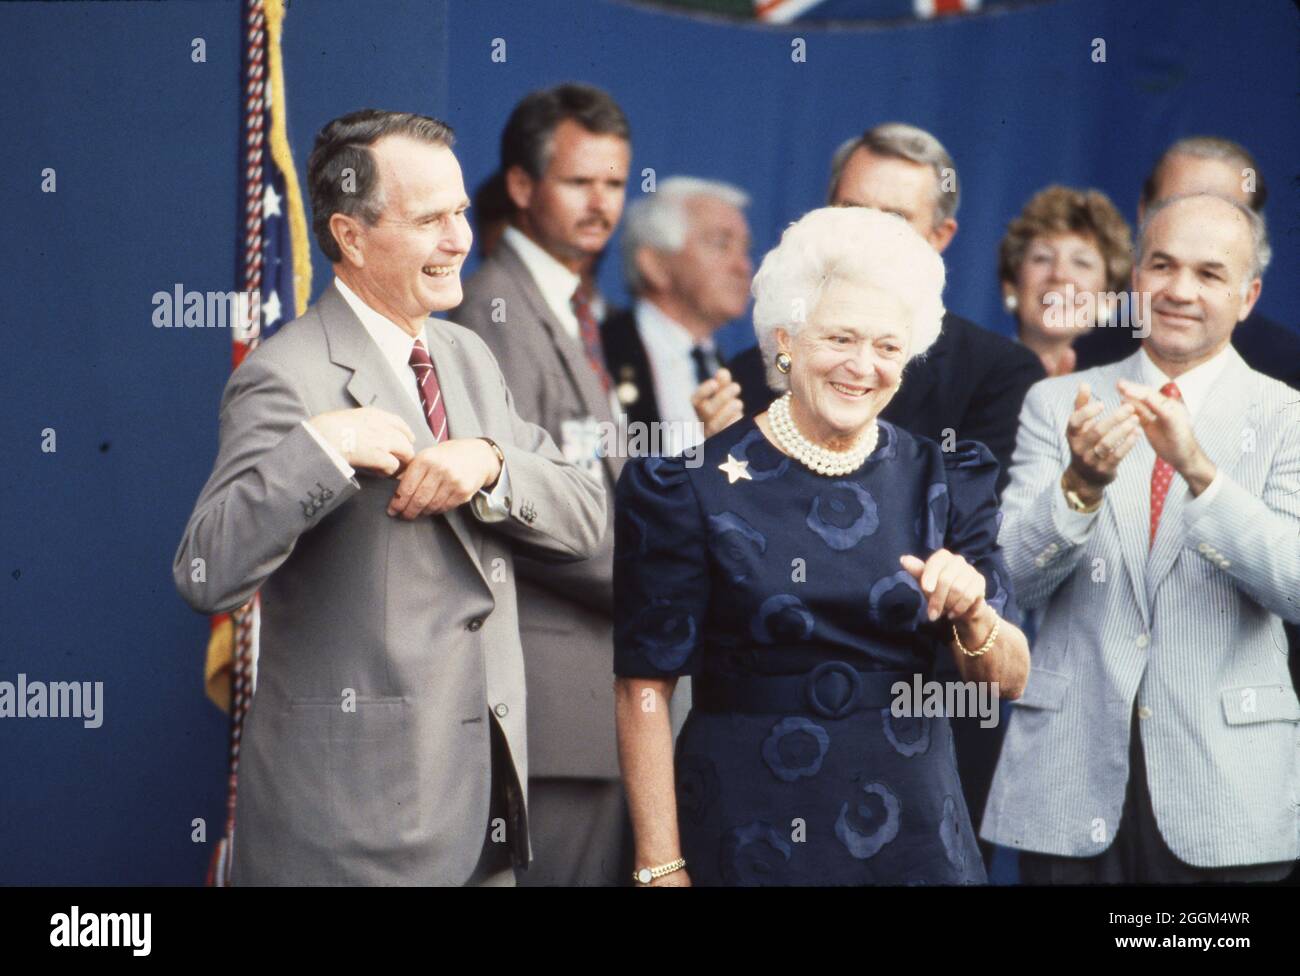 Houston Texas USA, Juli 1990:USA Präs. George H.W. Bush und First Lady Barbara Bush mit anderen Staats- und Regierungschefs der Welt während einer formellen Sitzung auf dem Wirtschaftsgipfel der Industrienationen. ©Bob Daemmrich Stockfoto